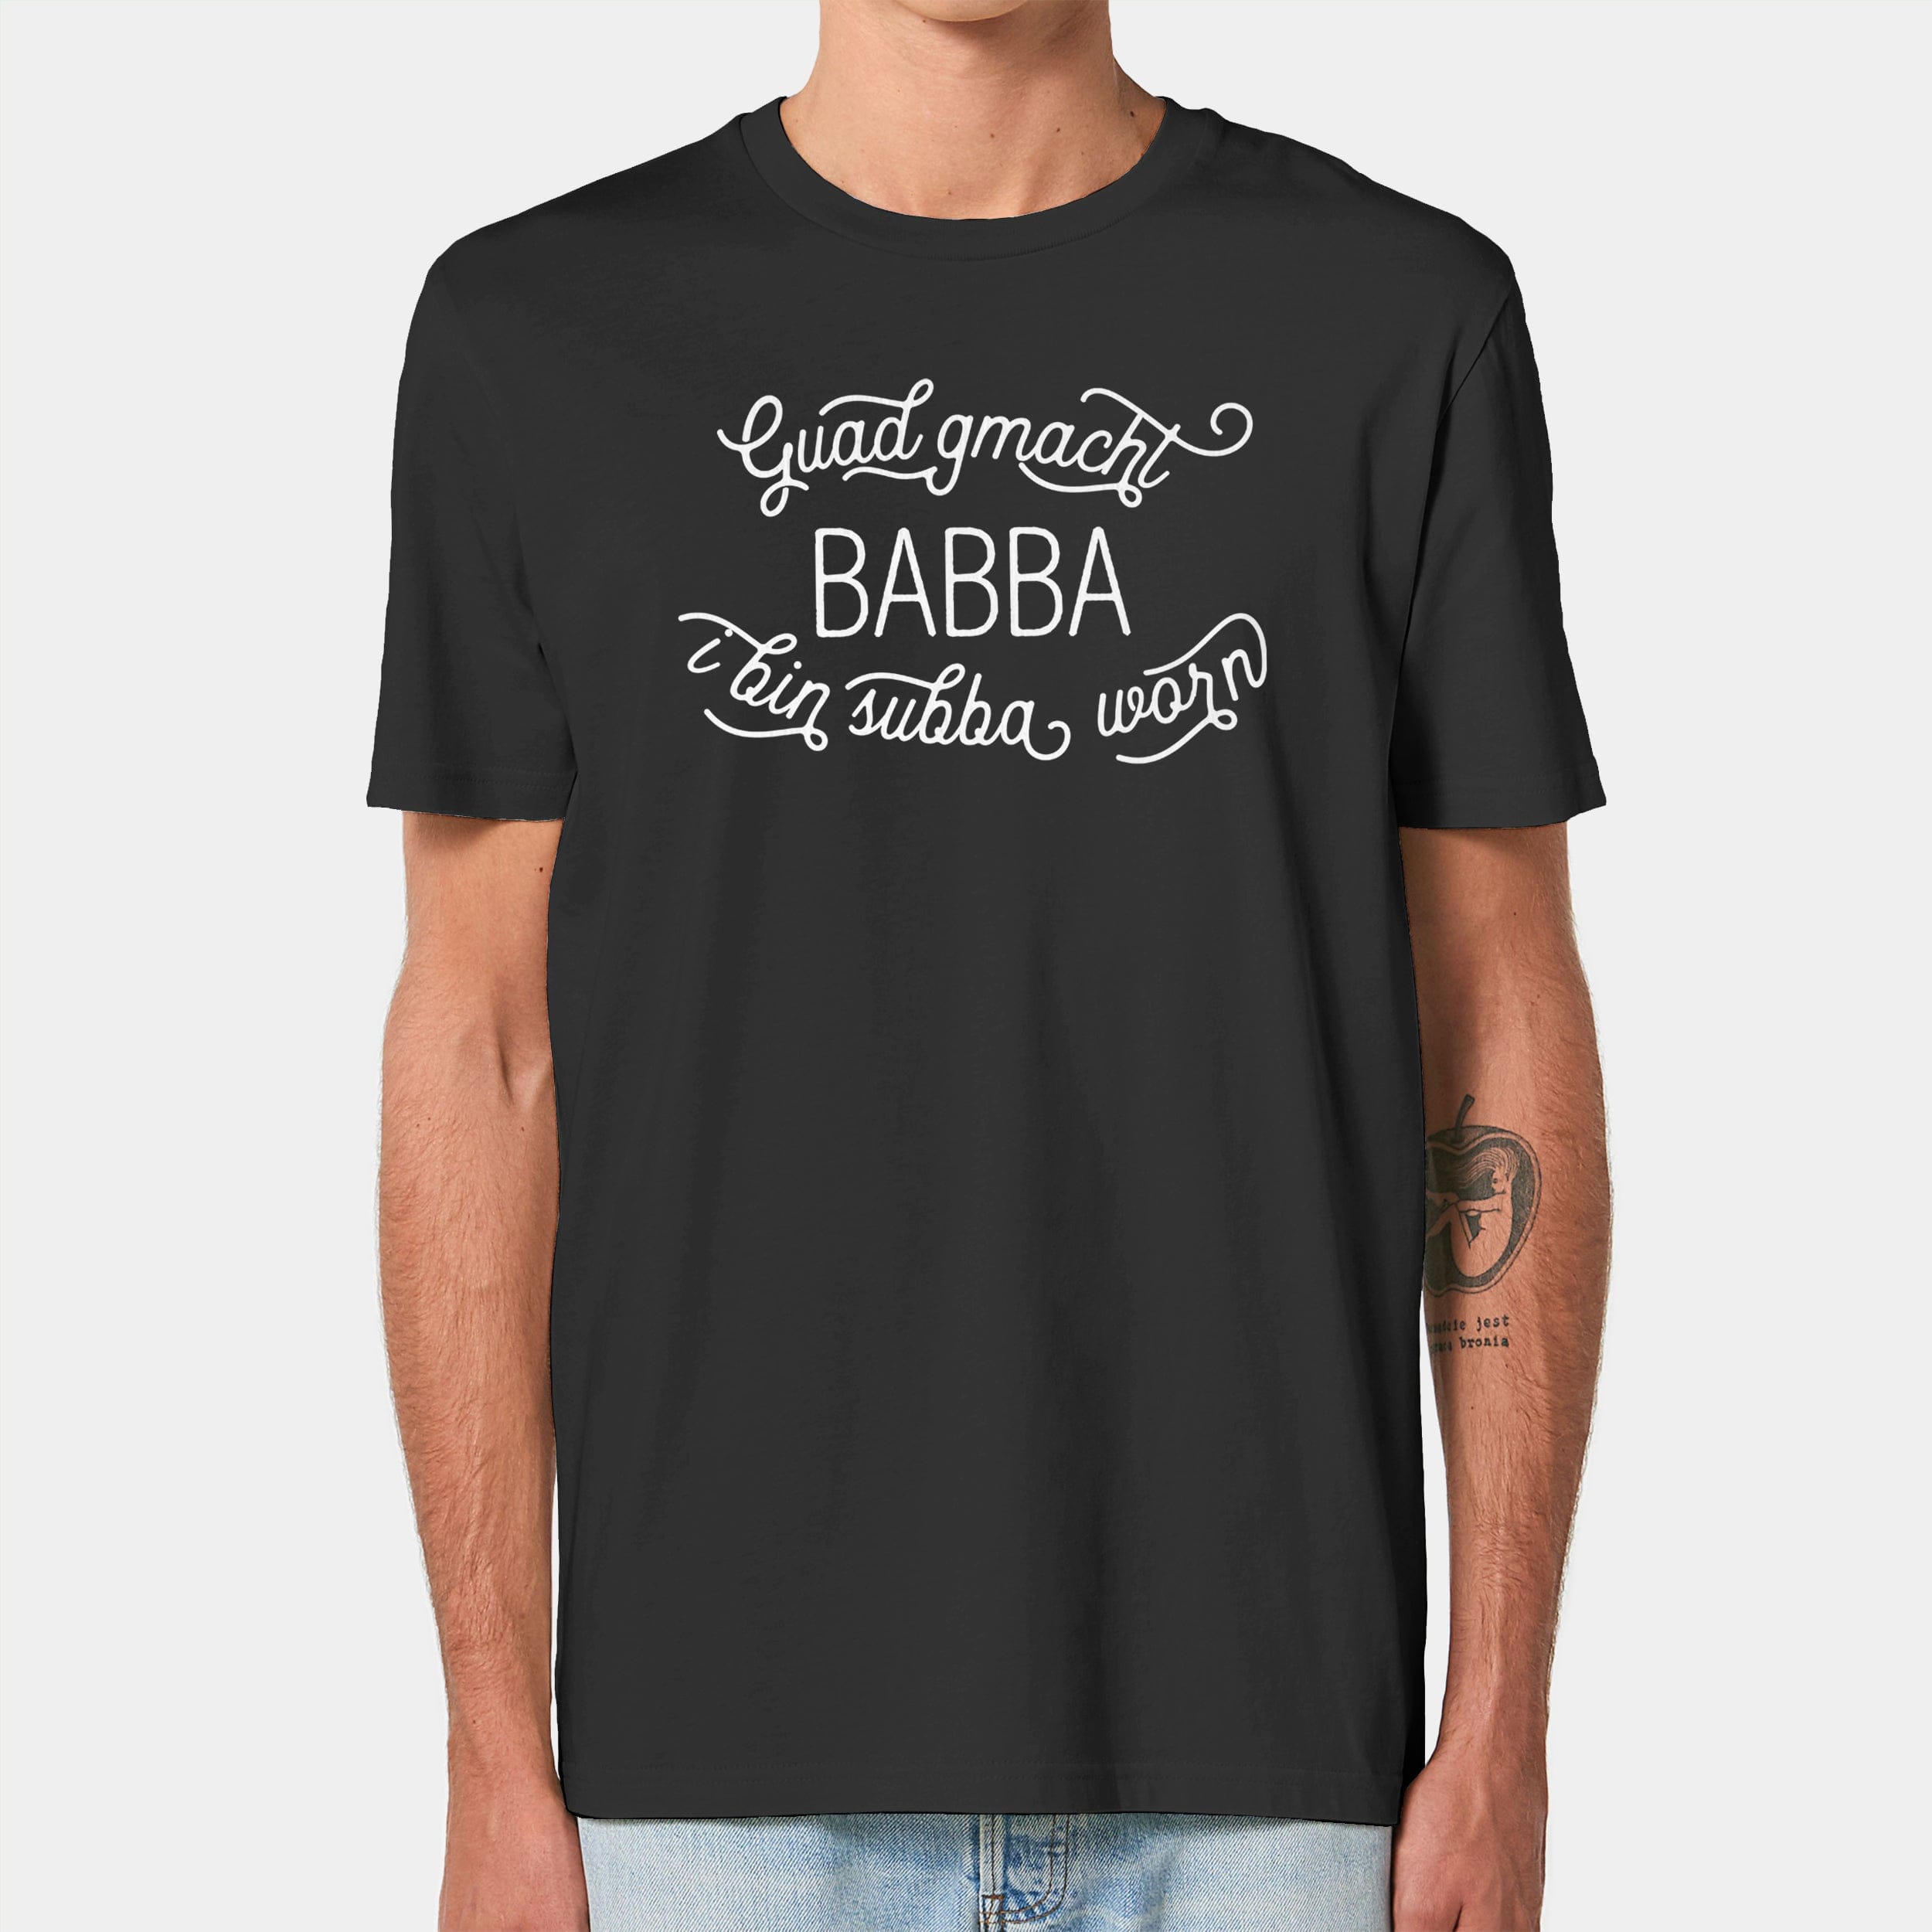 HEITER & LÄSSIG T-Shirt "Guad gmacht Babba" S / schwarz - aus nachhaltiger und fairer Produktion